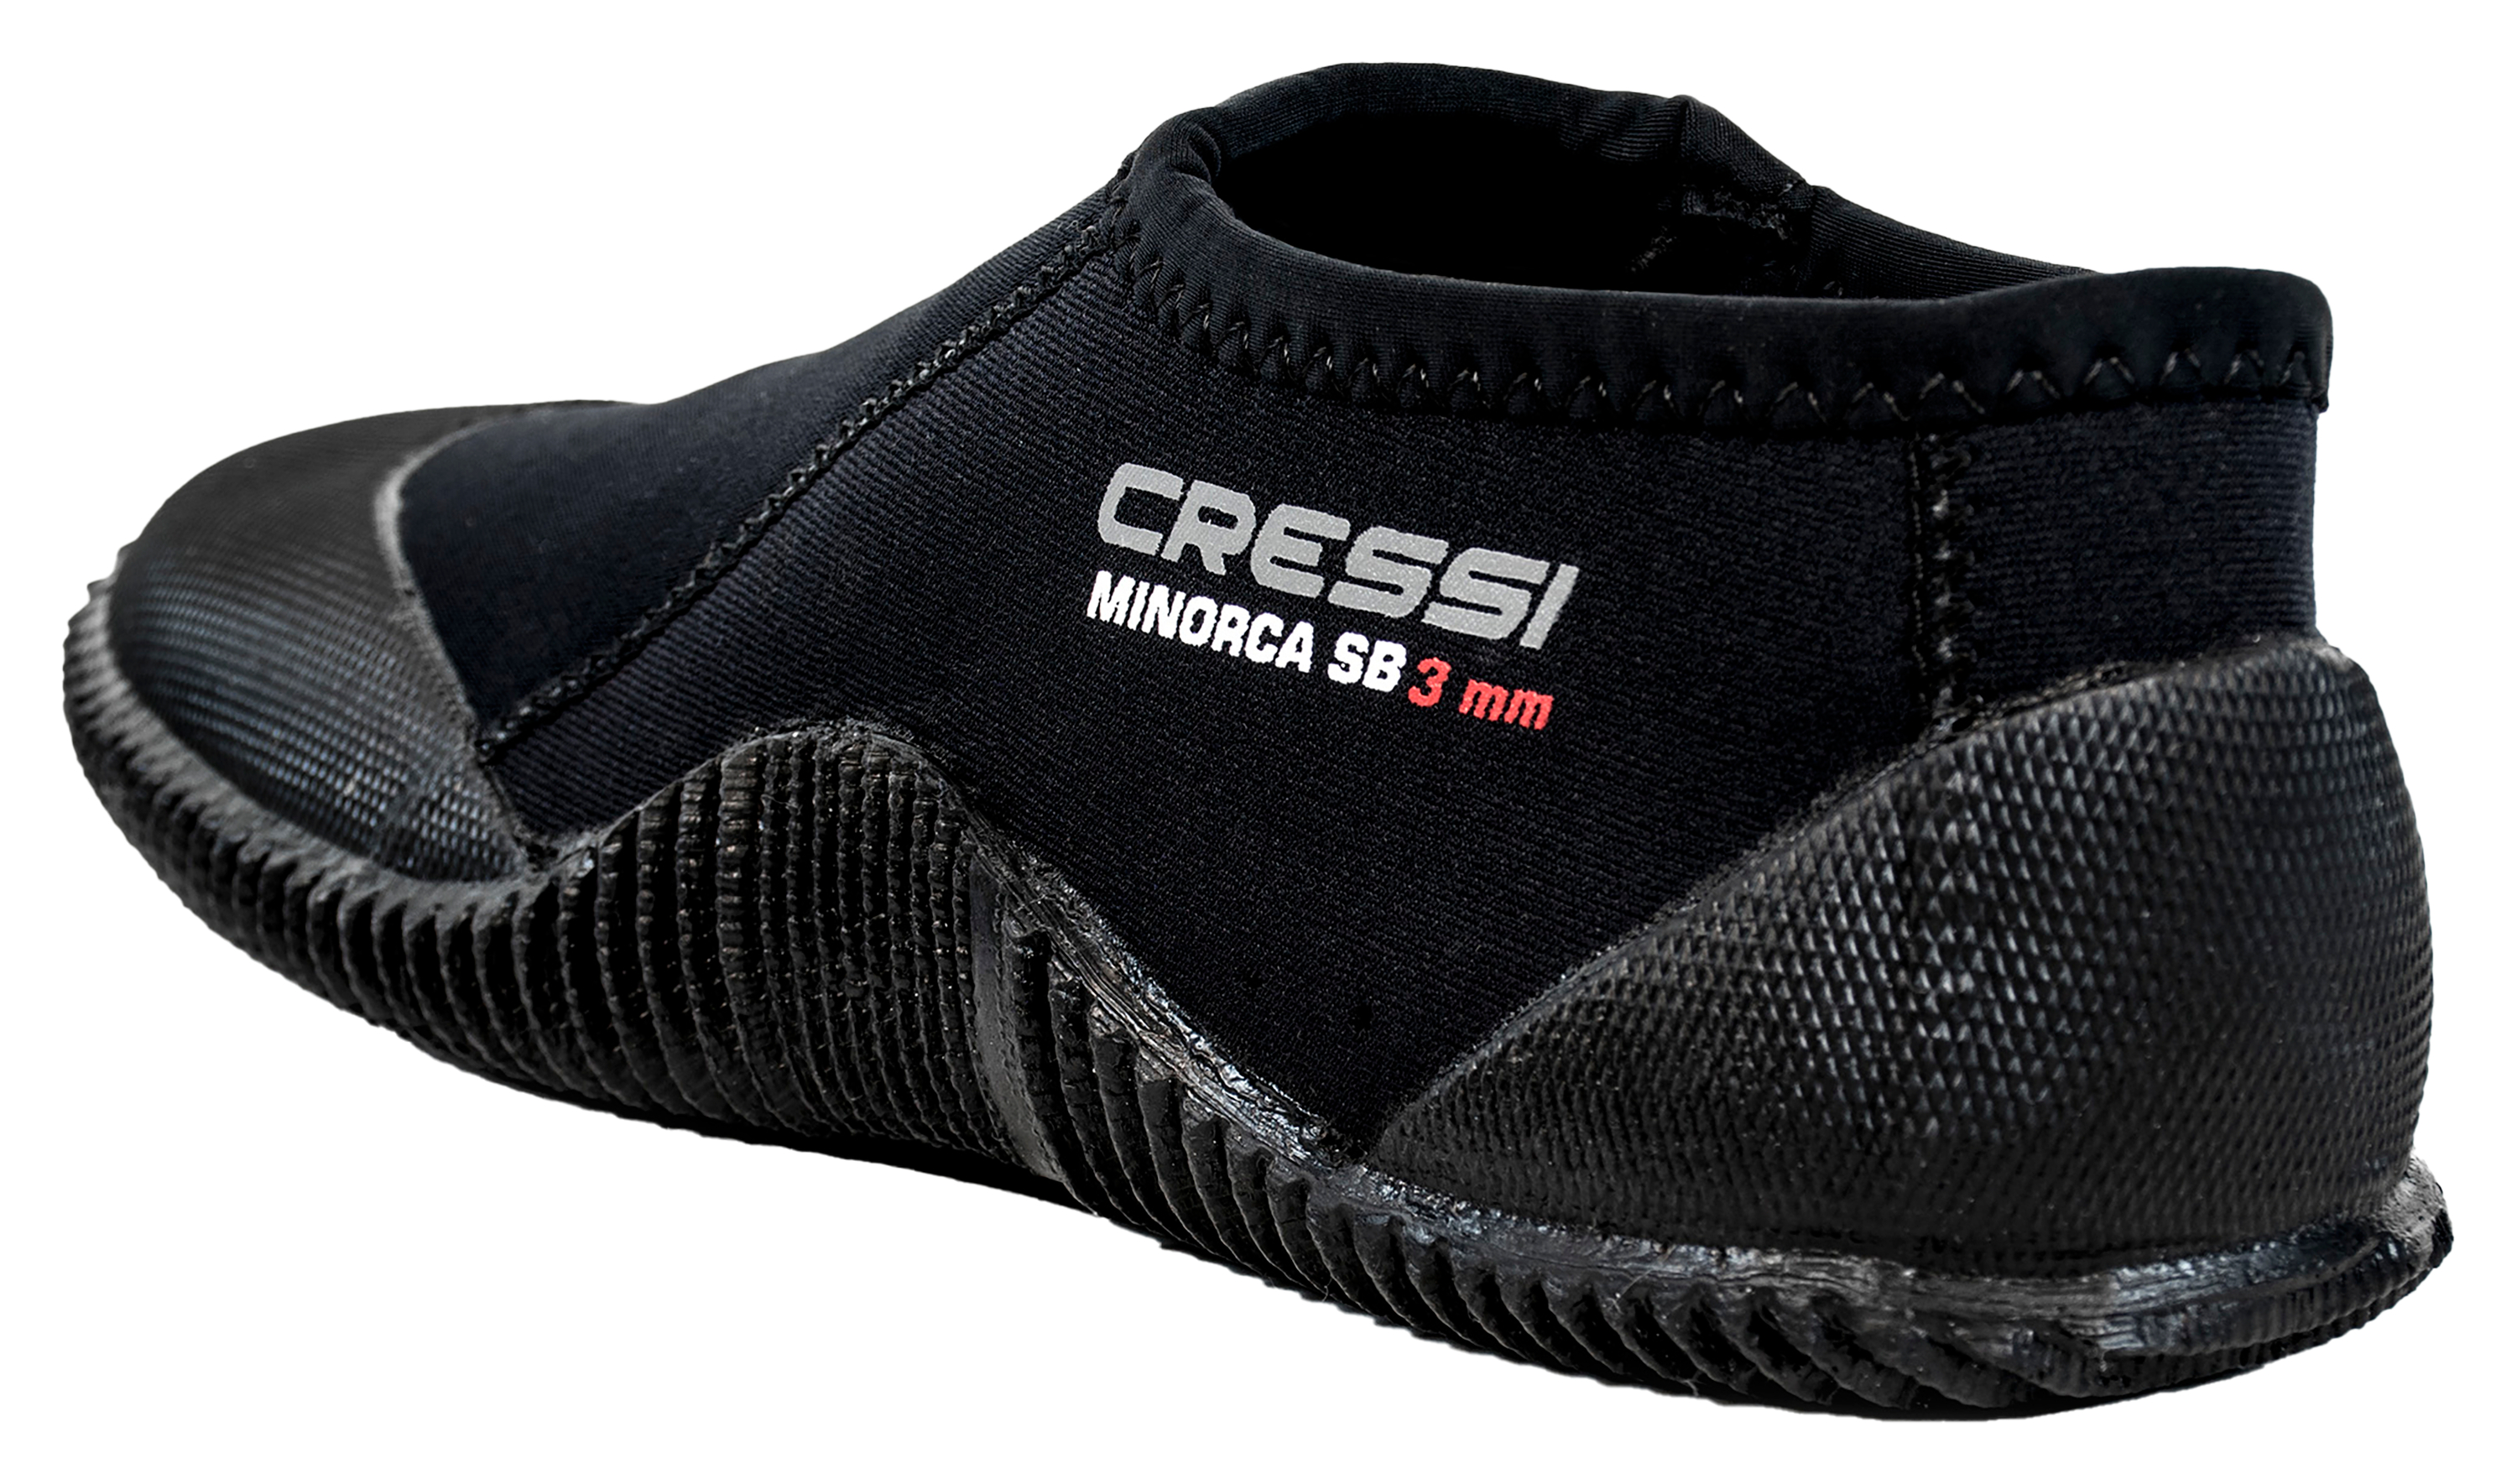 Cressi Minorca Short Boots for Men - Black - 6